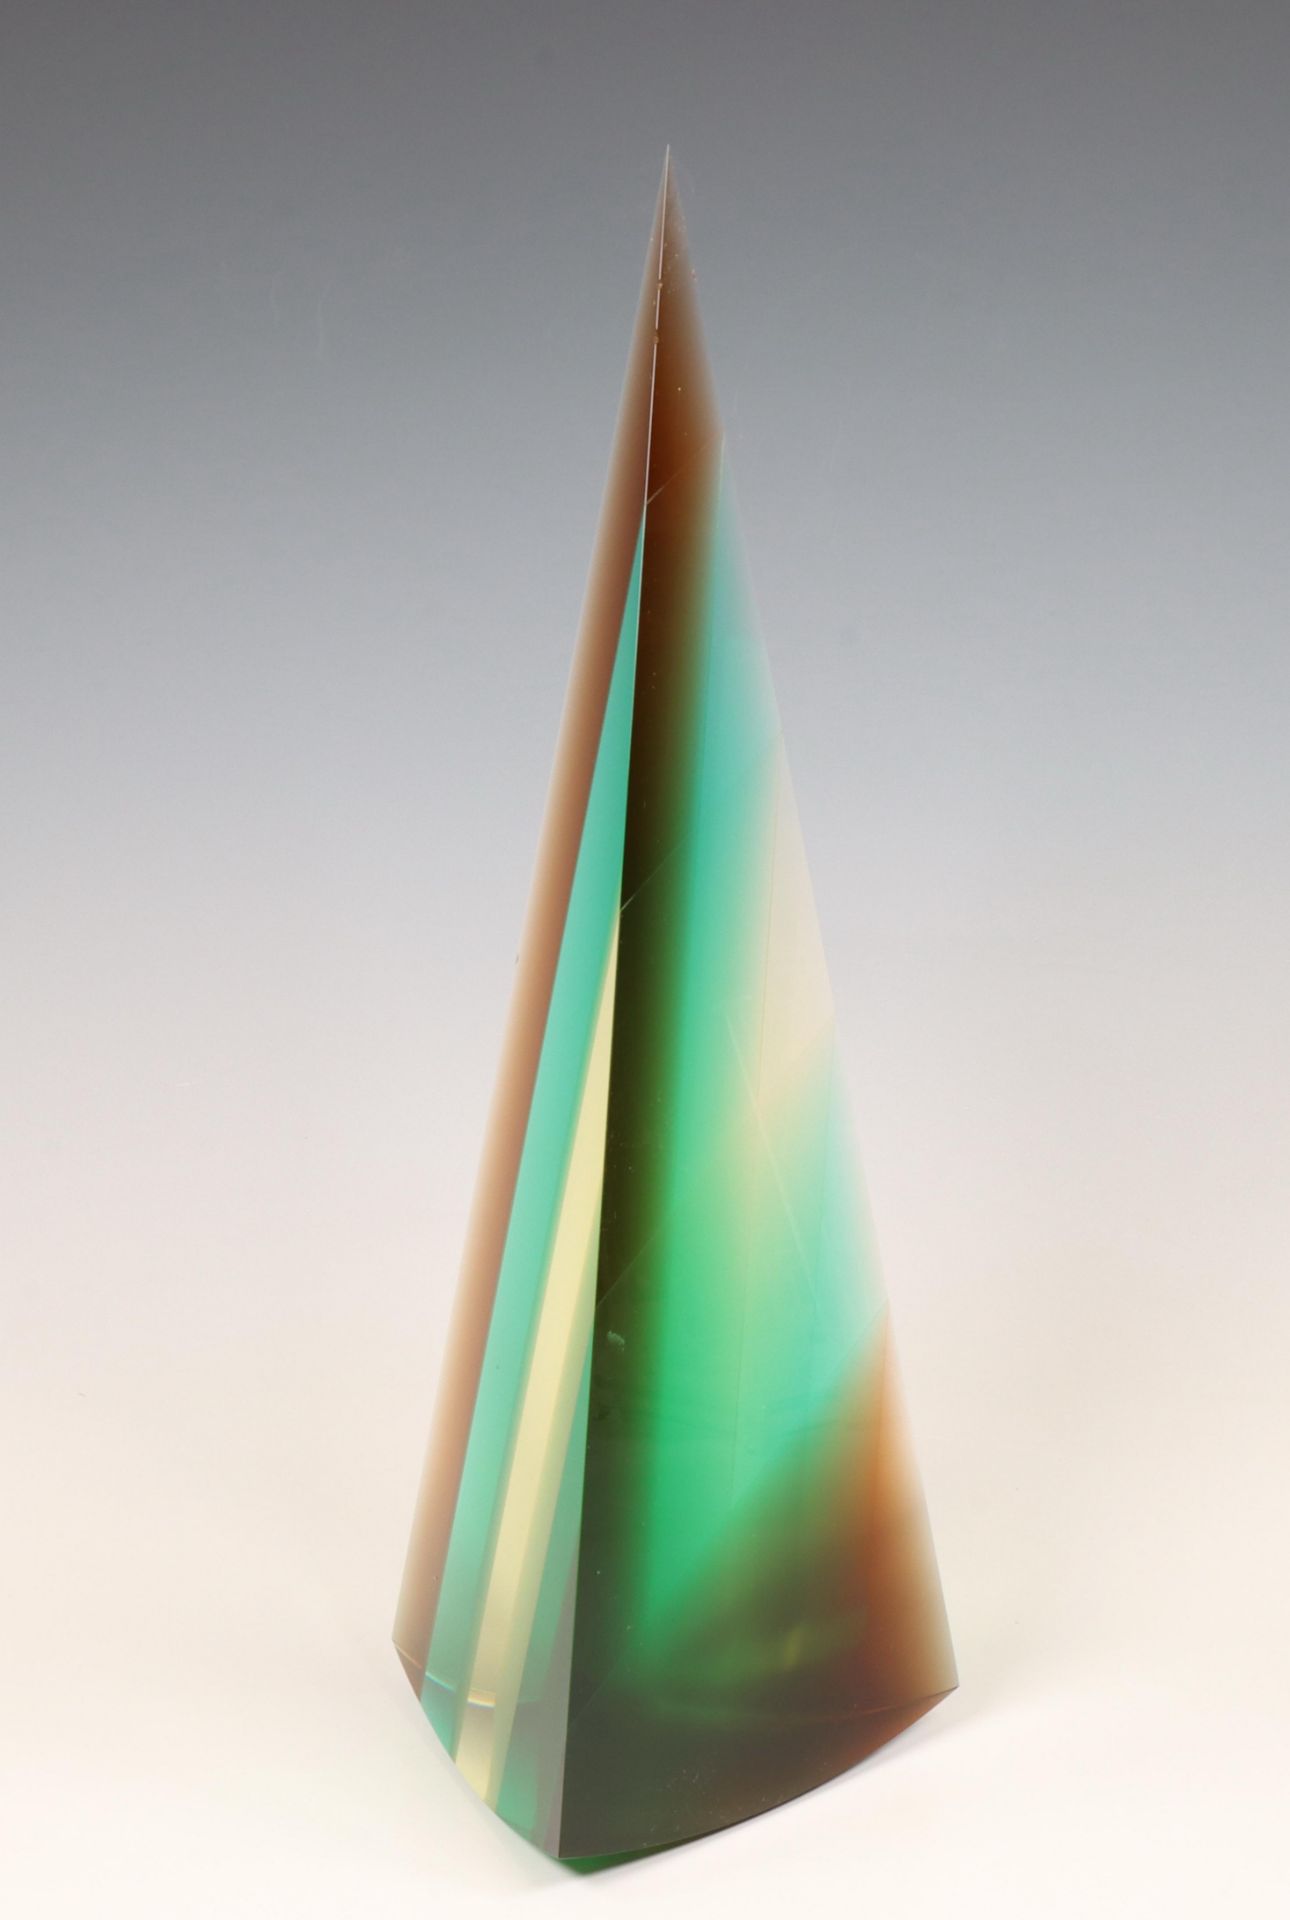 Lubomir Artz (1946-2015), geslepen en gepolijste glassculptuur "Coloured Pyramid", circa 1990.